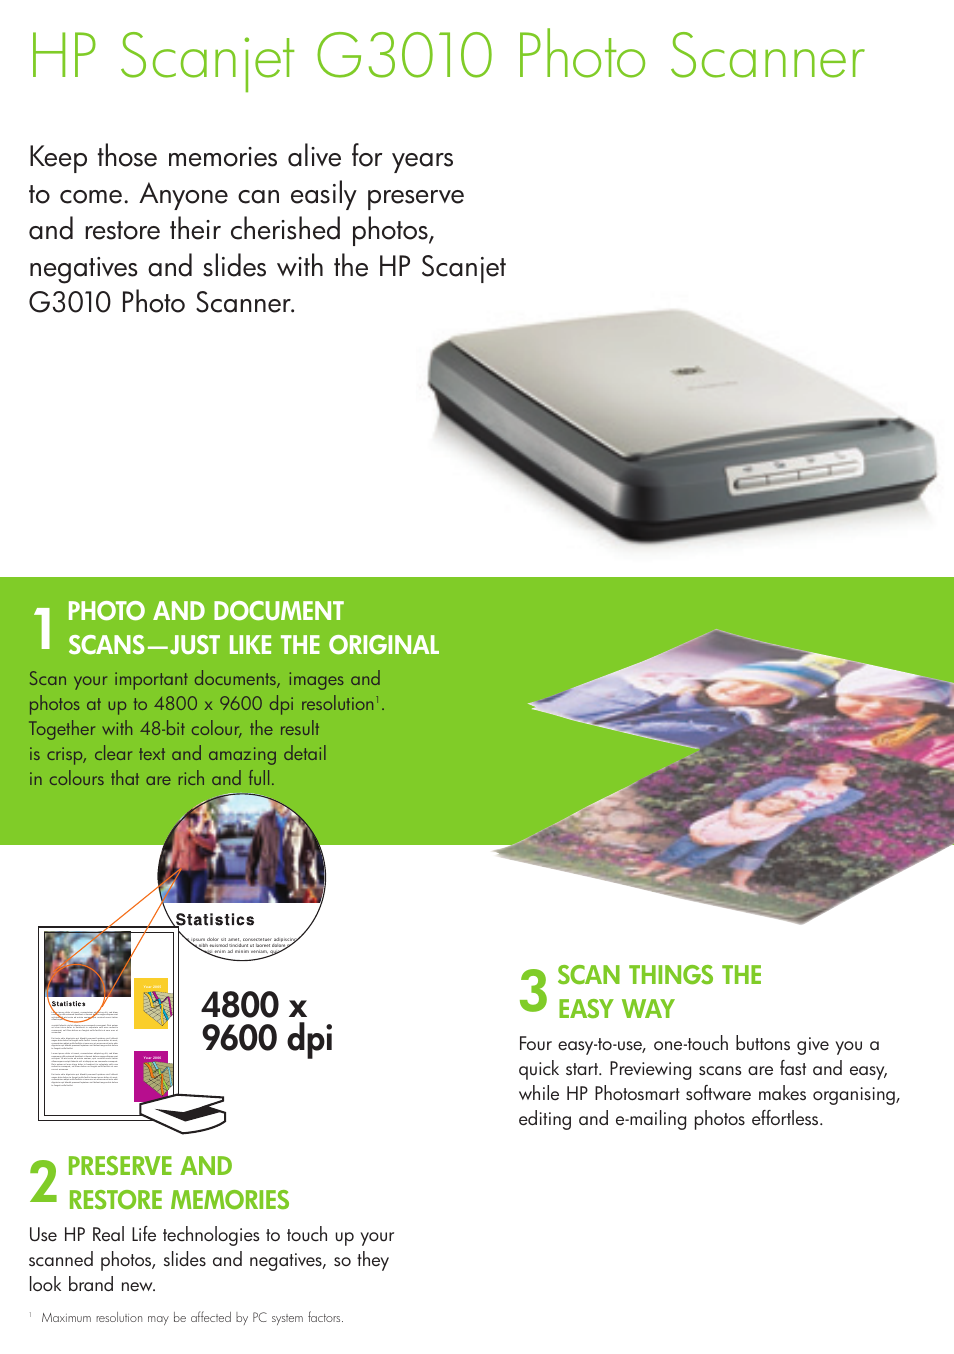 Hp scanjet g3010 photo scanner | Intel Scanjet 2400 User Manual | Page 7 /  12